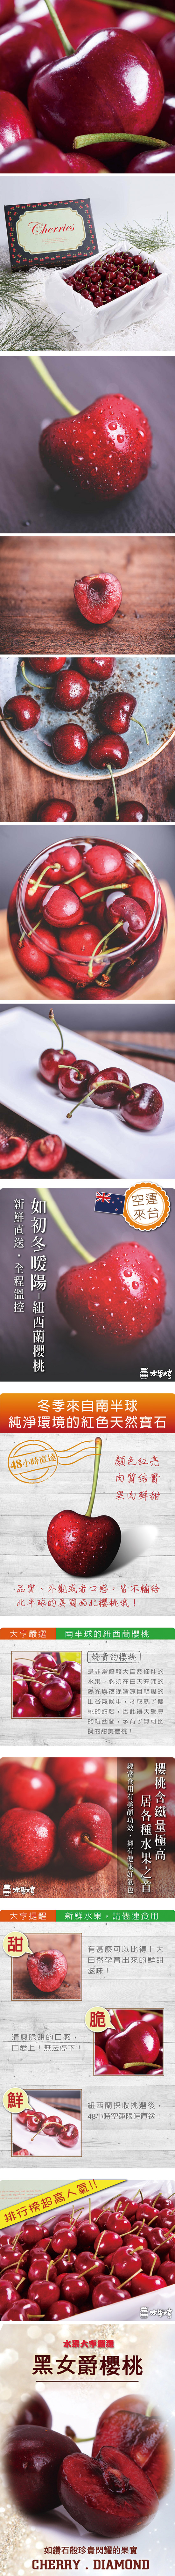 水果大亨 紐西蘭產地直送櫻桃禮盒